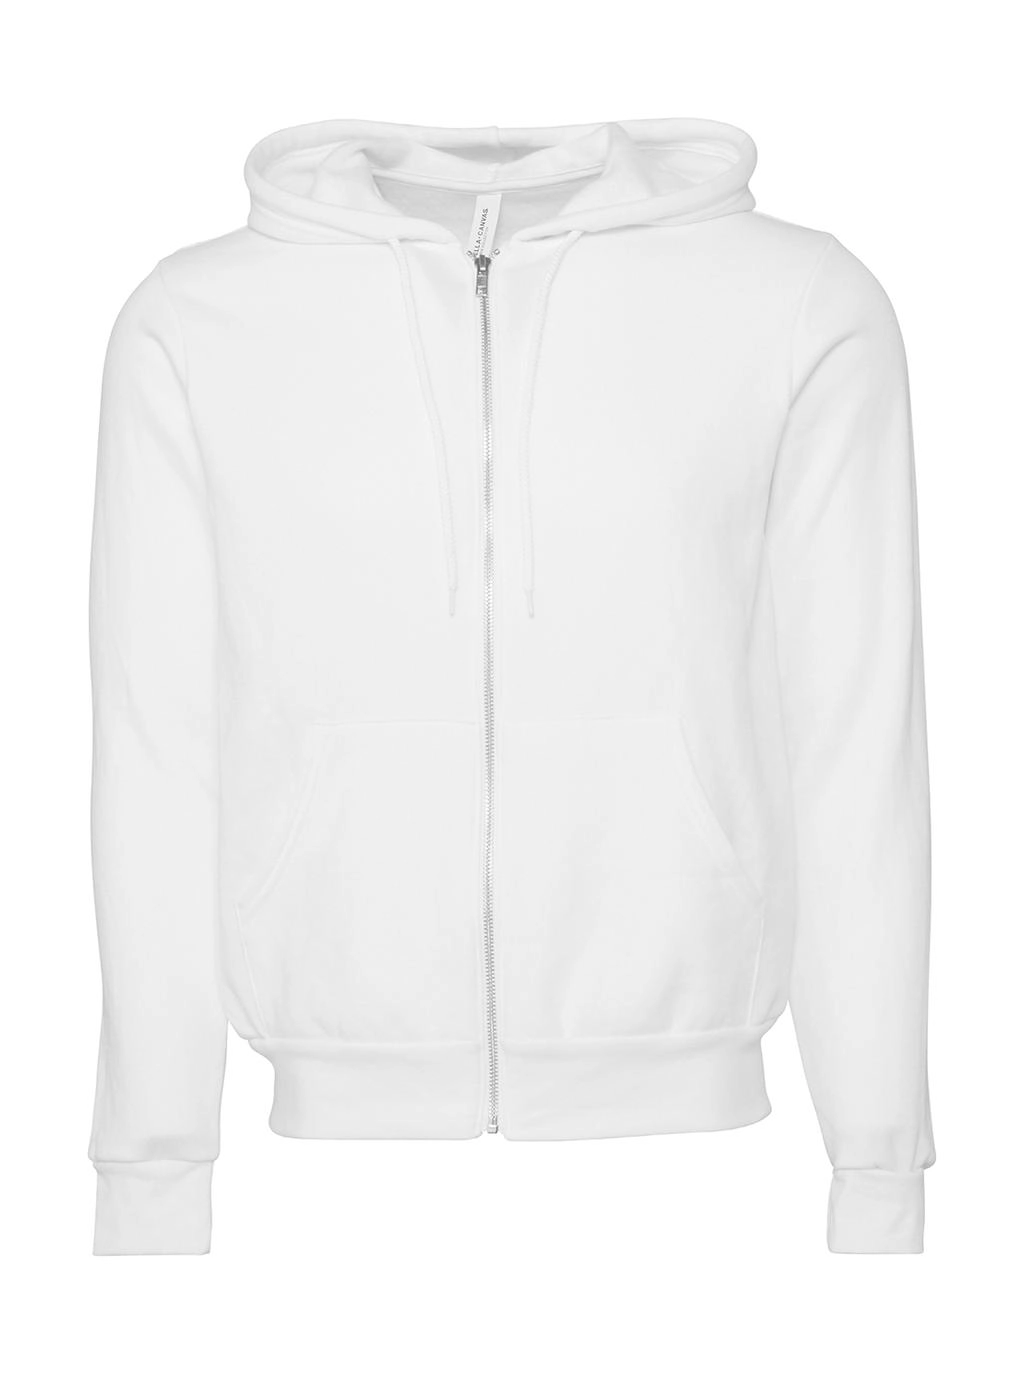 Unisex Poly-Cotton Full Zip Hoodie zum Besticken und Bedrucken in der Farbe DTG White mit Ihren Logo, Schriftzug oder Motiv.